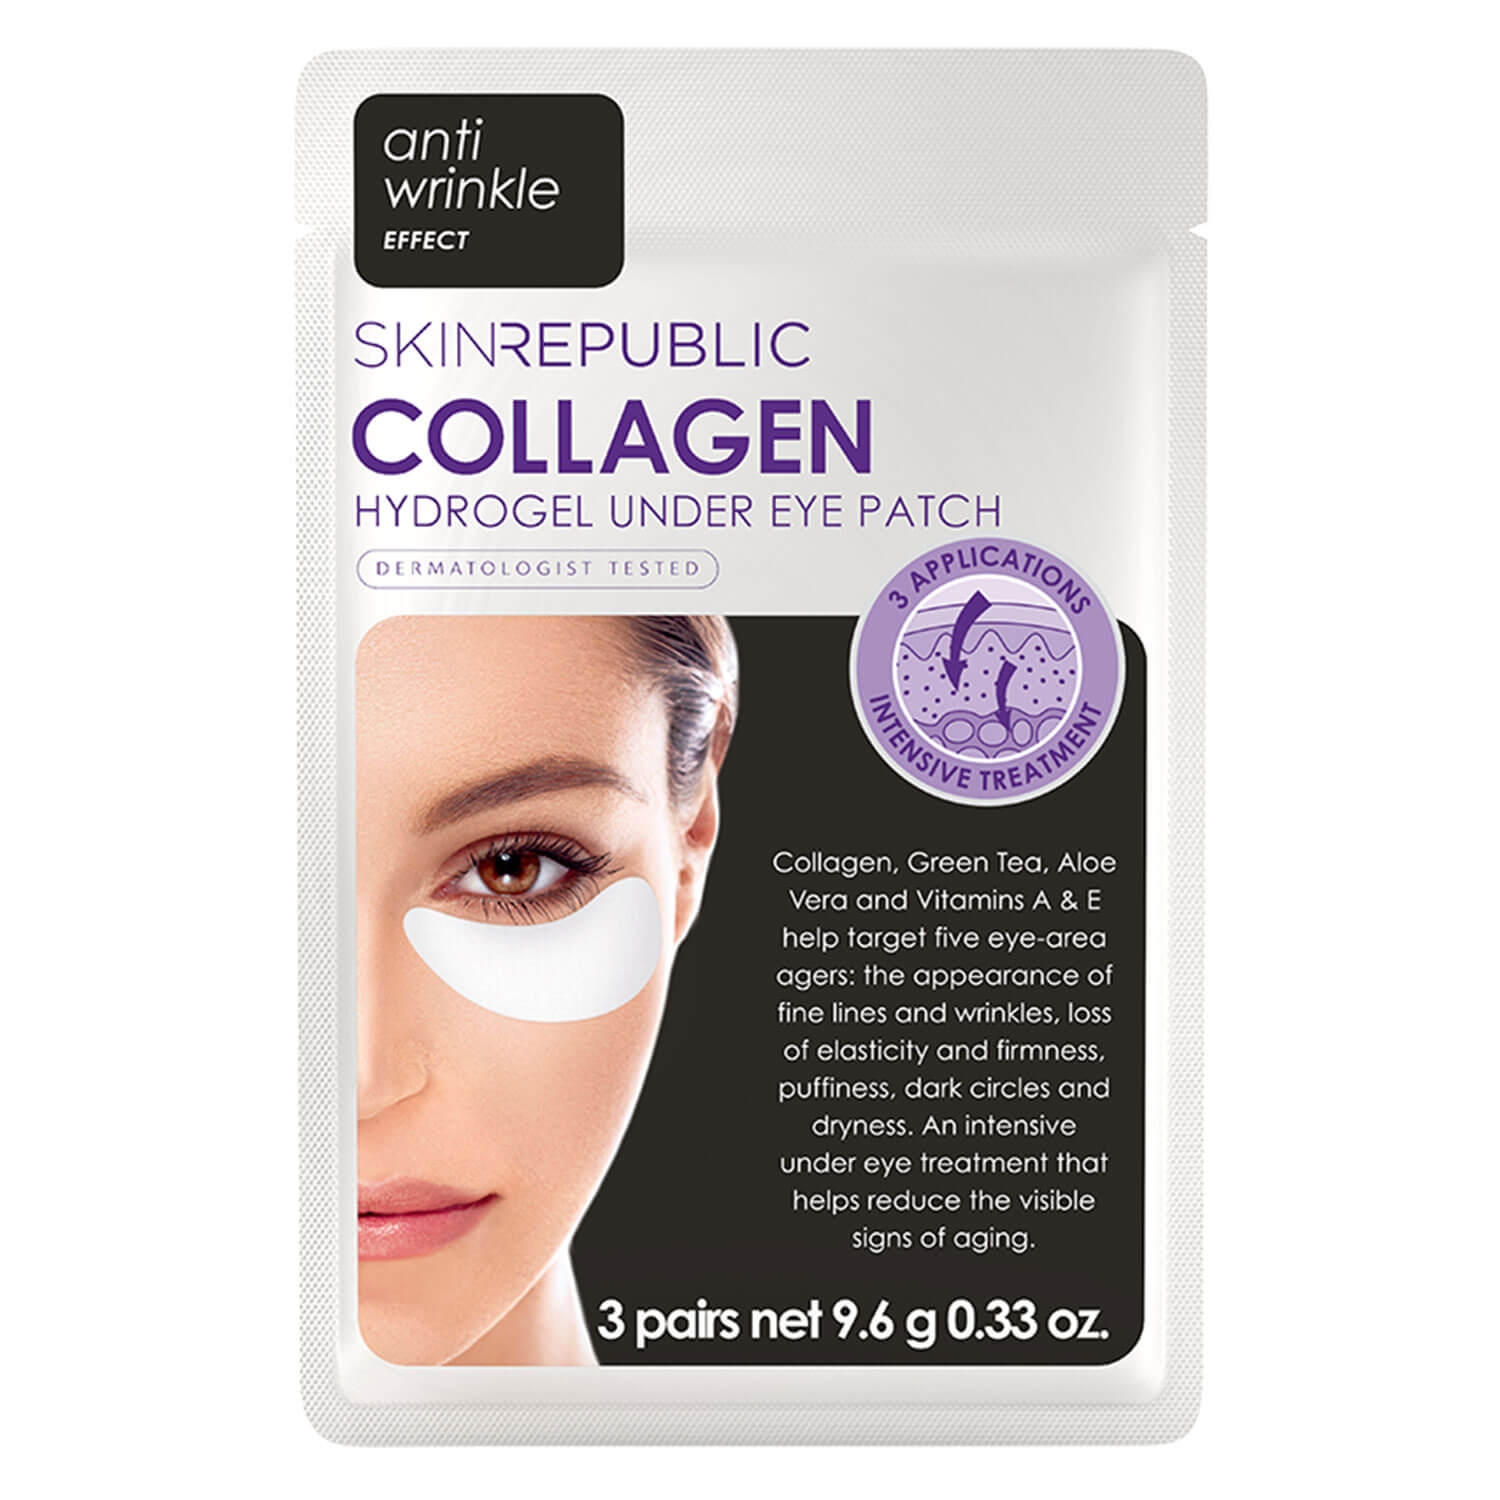 Produktbild von Skin Republic - Collagen Hydrogel Under Eye Patch